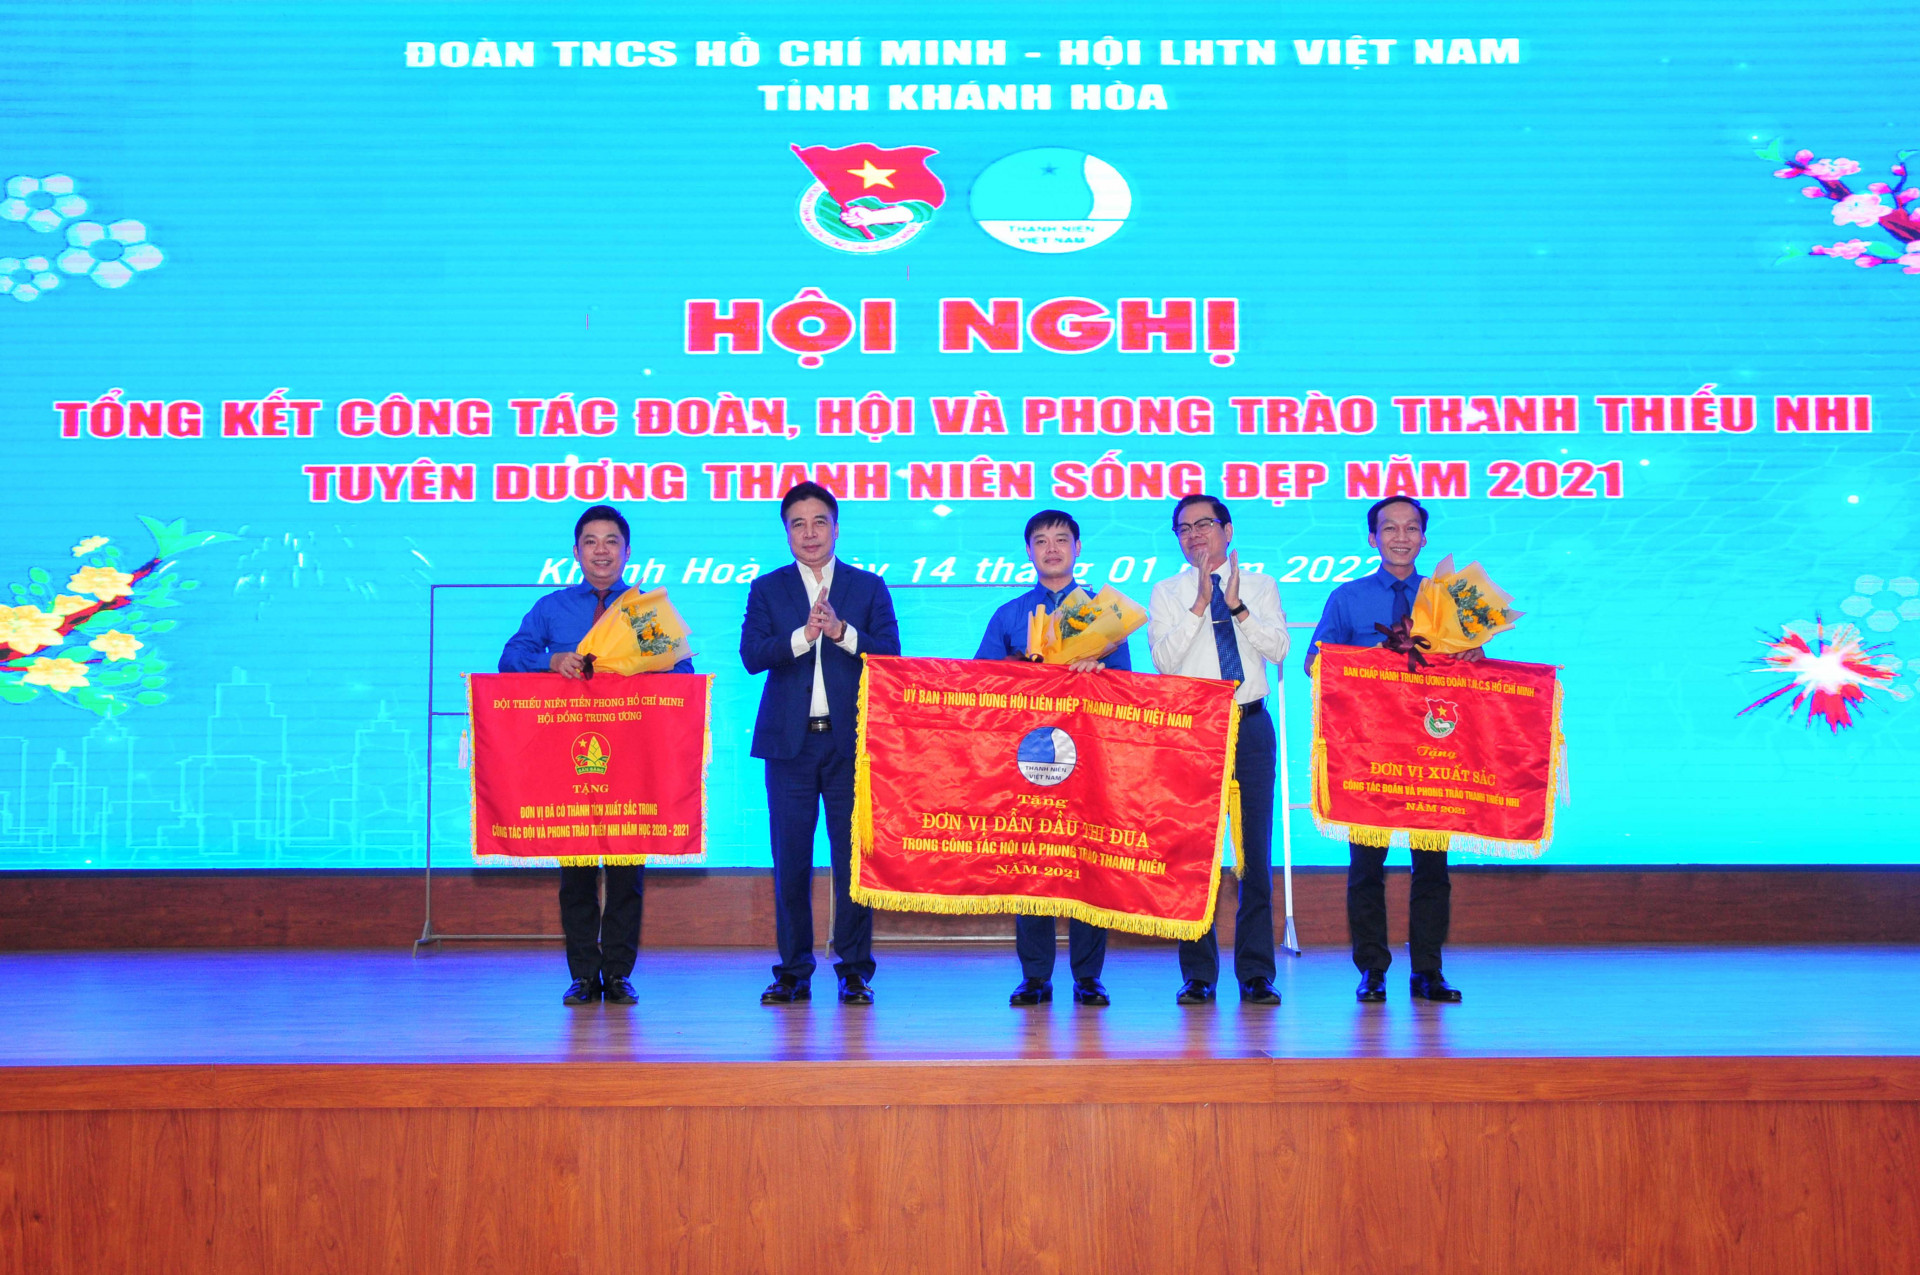 Lãnh đạo tỉnh trao cờ thi đua của Trung ương cho Tỉnh đoàn, Hội LHTN Việt Nam tỉnh và Hội đồng Đội tỉnh